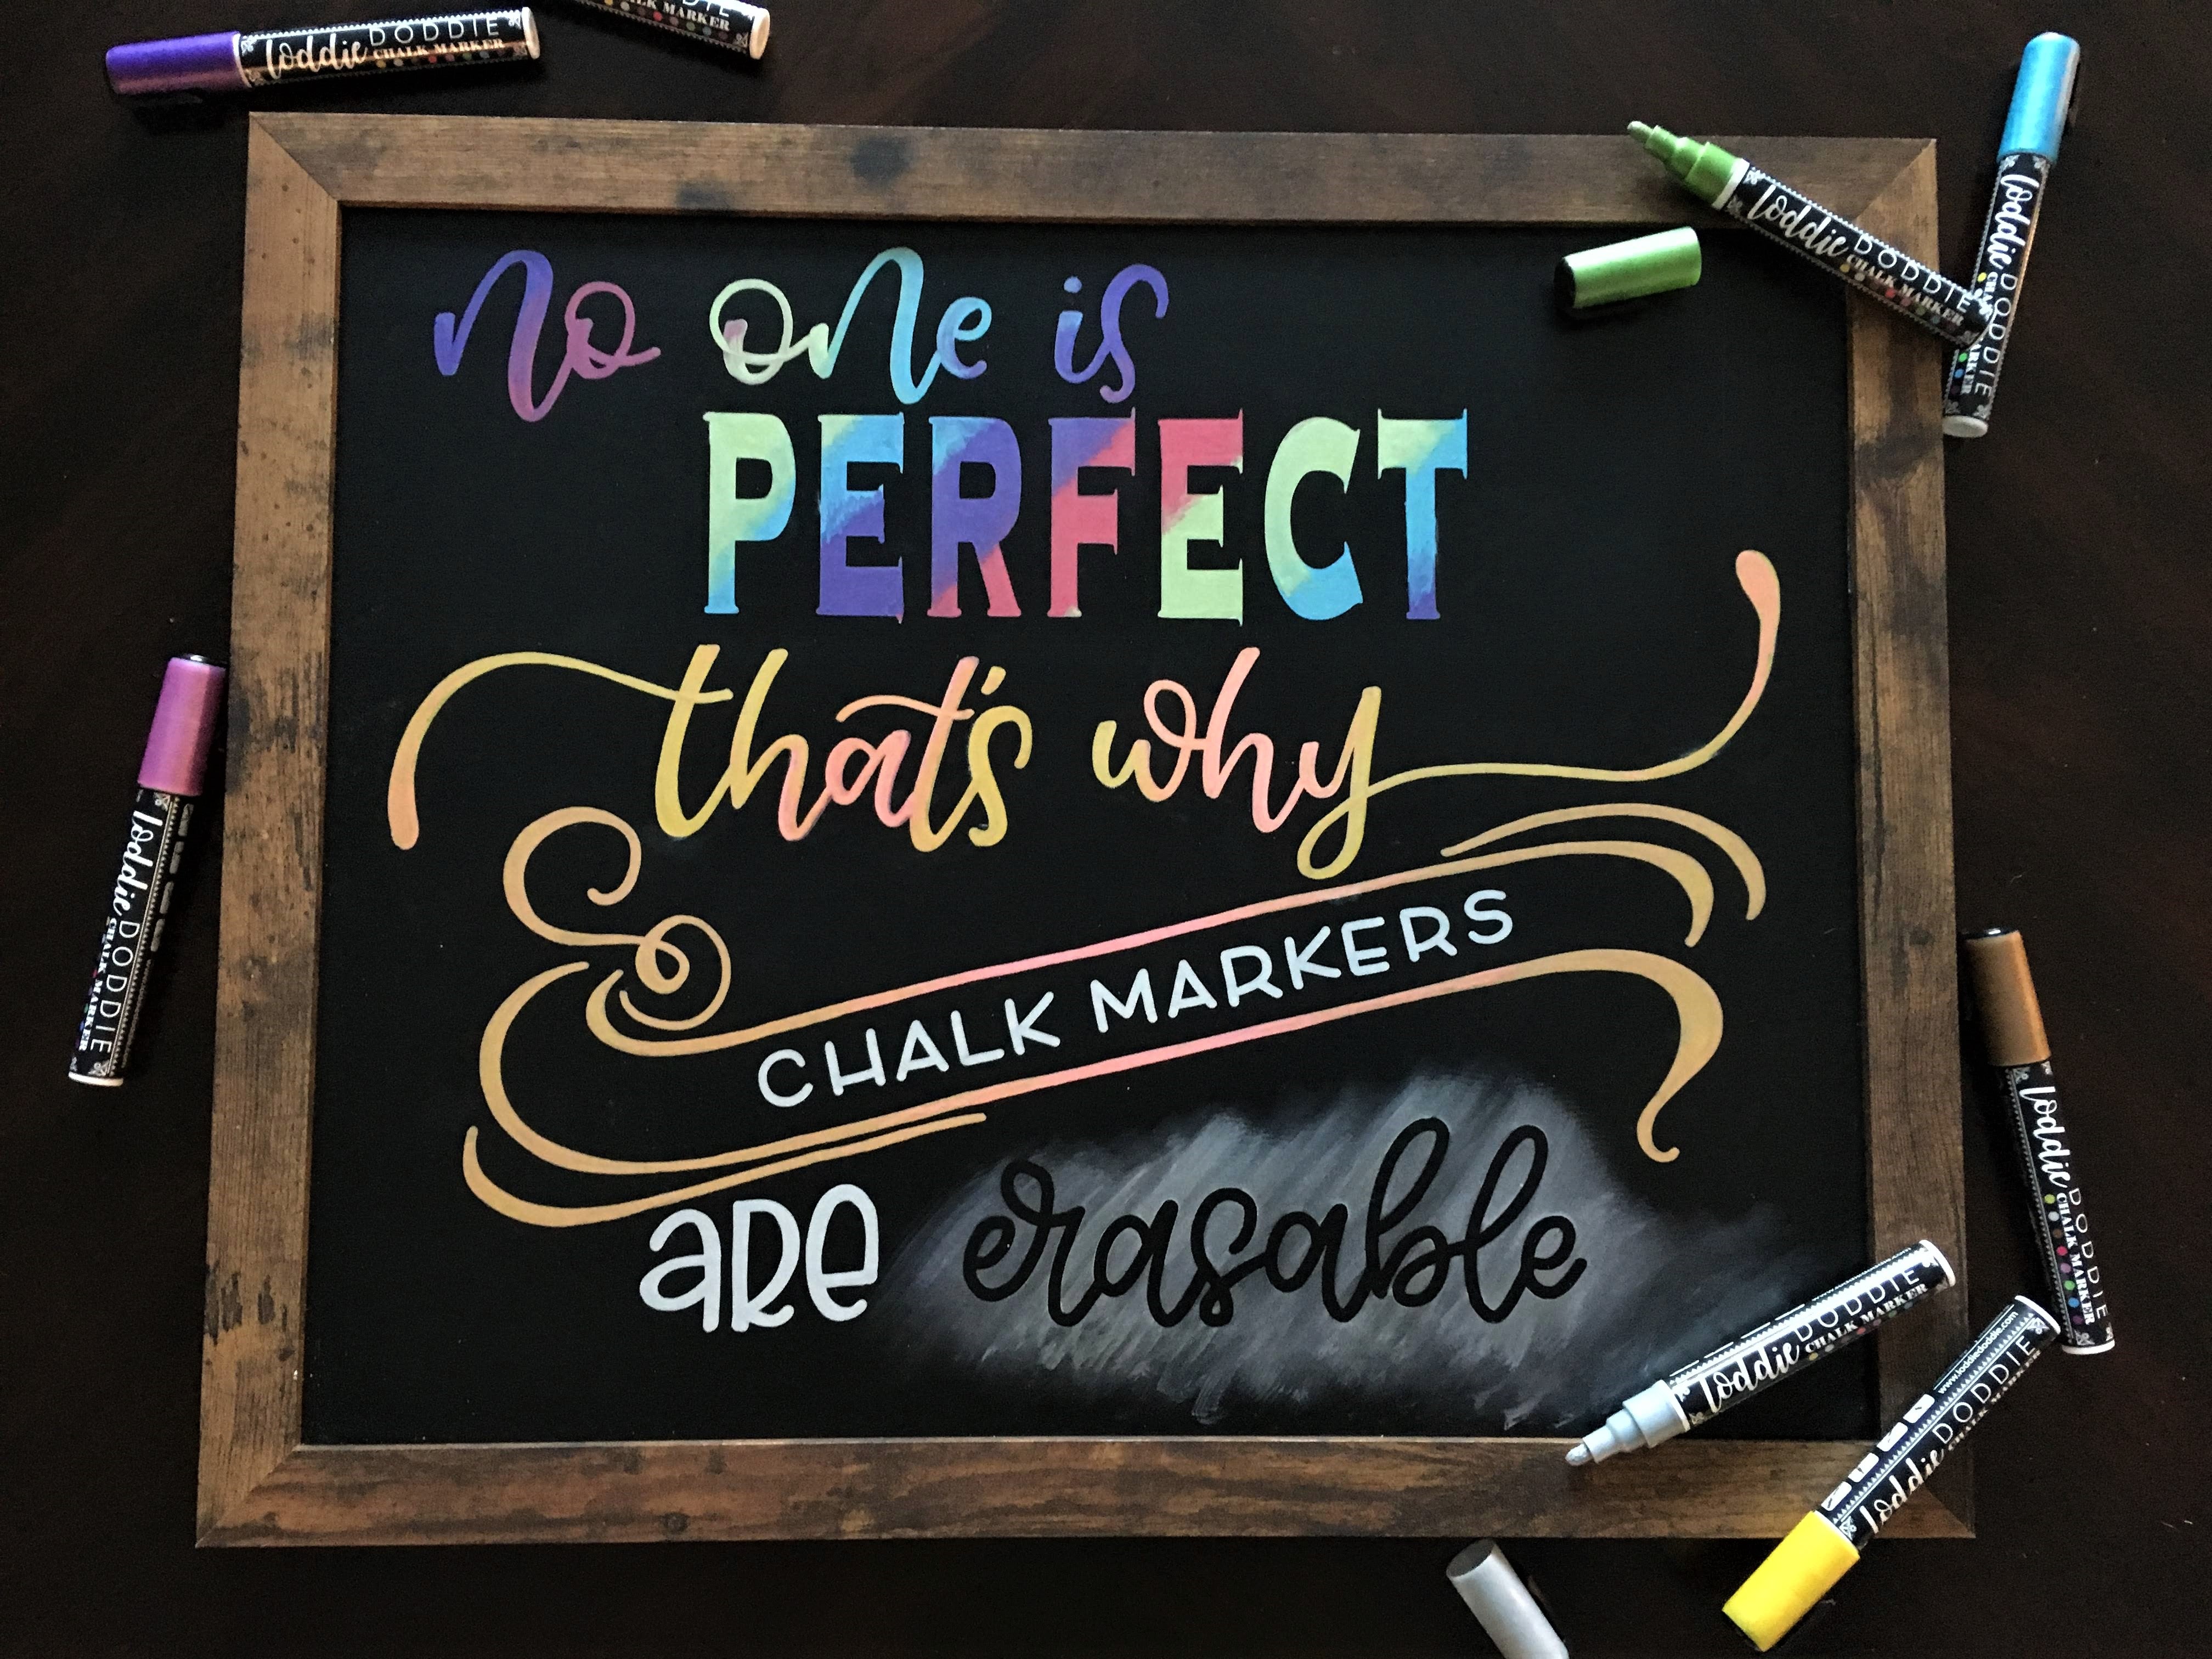 uni Chalk Markers, PWE-5K Metallic Medium Tip Marker - 8 Pack